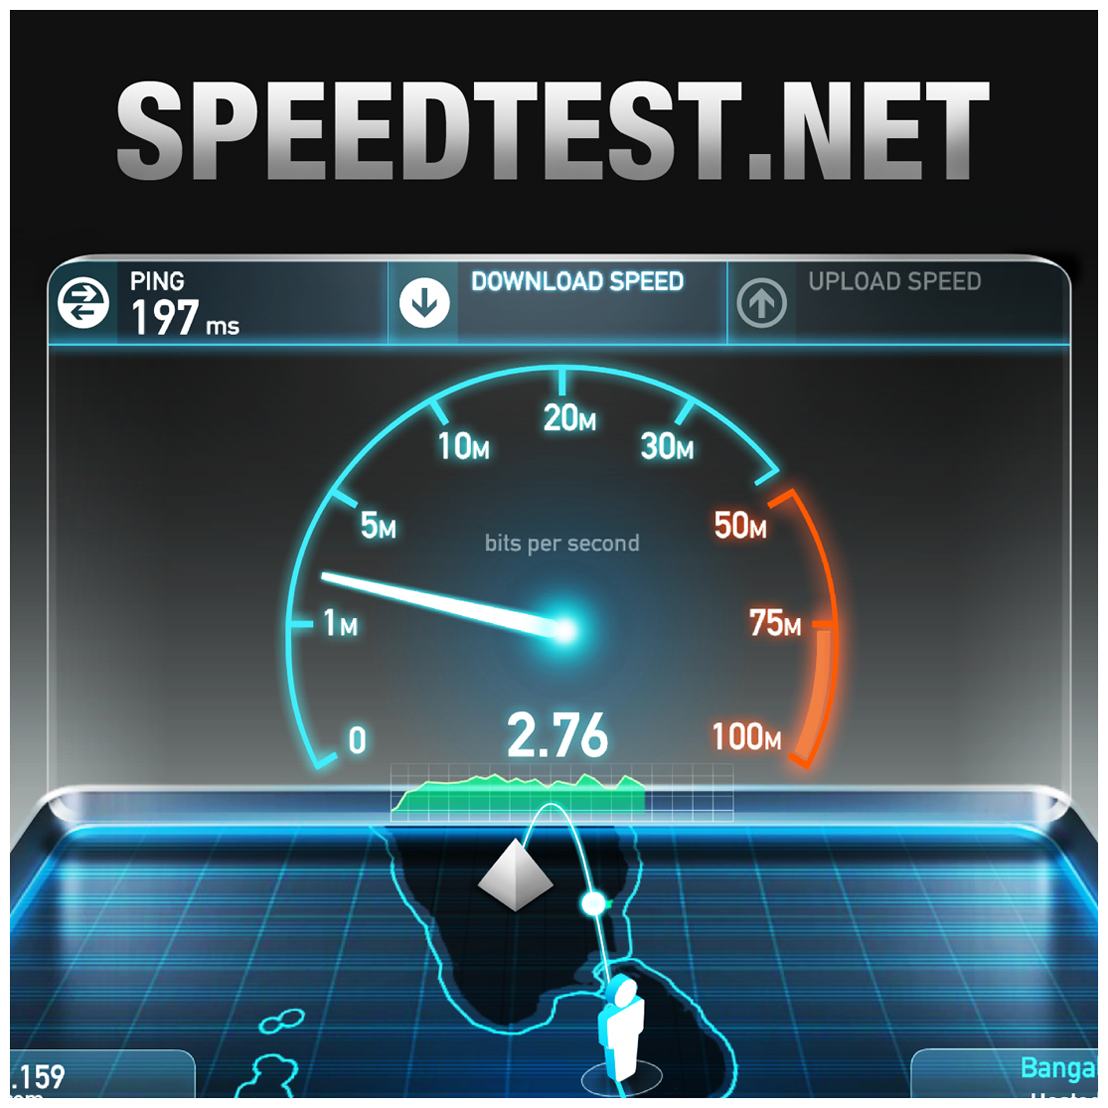 Тест проверить скорость интернет. Спидтест. Тест скорости интернета. Speedtest.net. Спидтест скорости интернета.